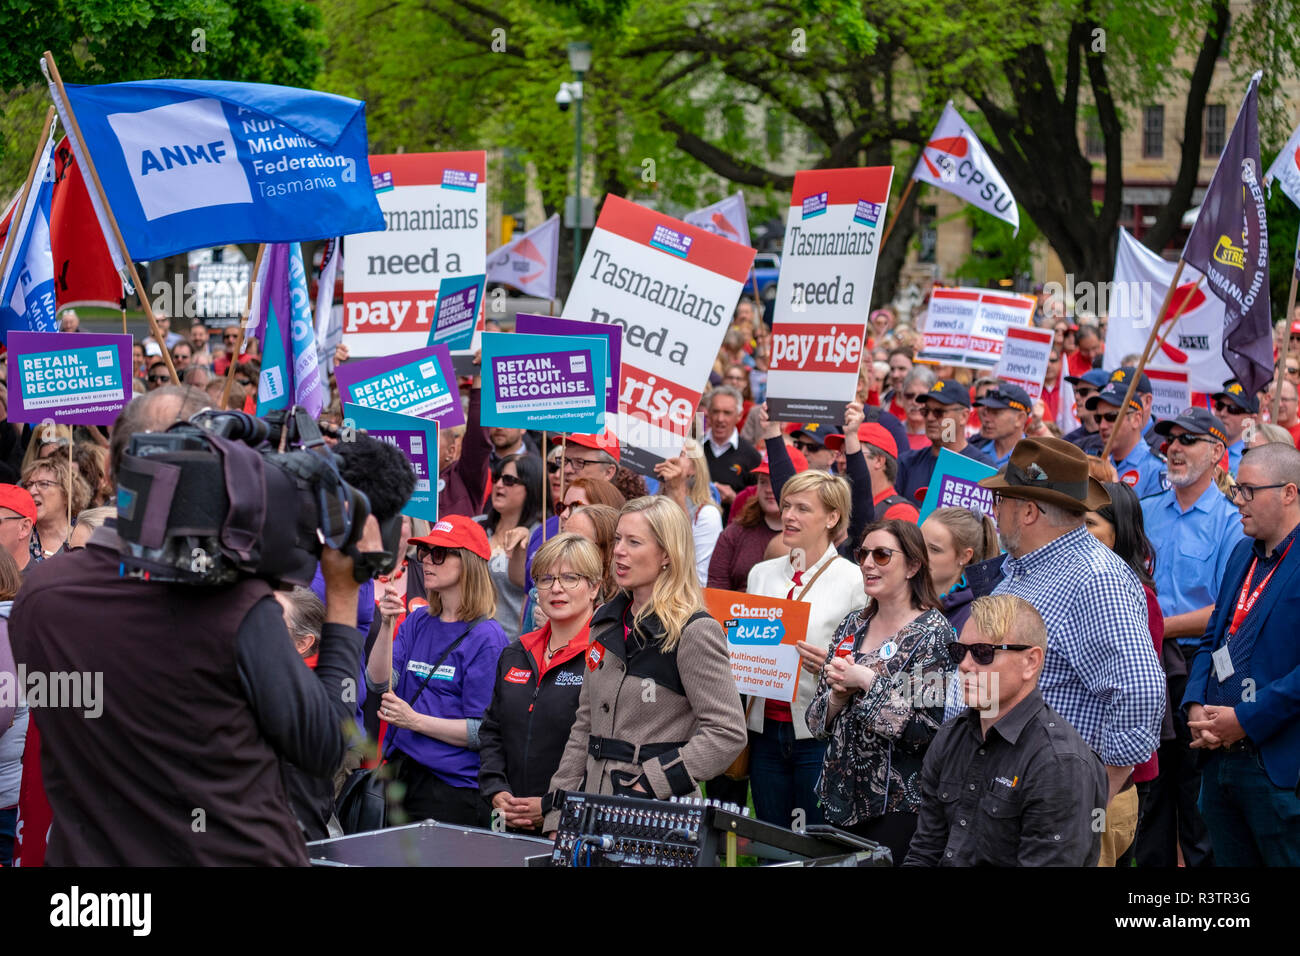 I funzionari pubblici, gli insegnanti e gli operatori sanitari a Hobart in Tasmania protestando fuori del Parlamento chiedono aumenti salariali. Foto Stock